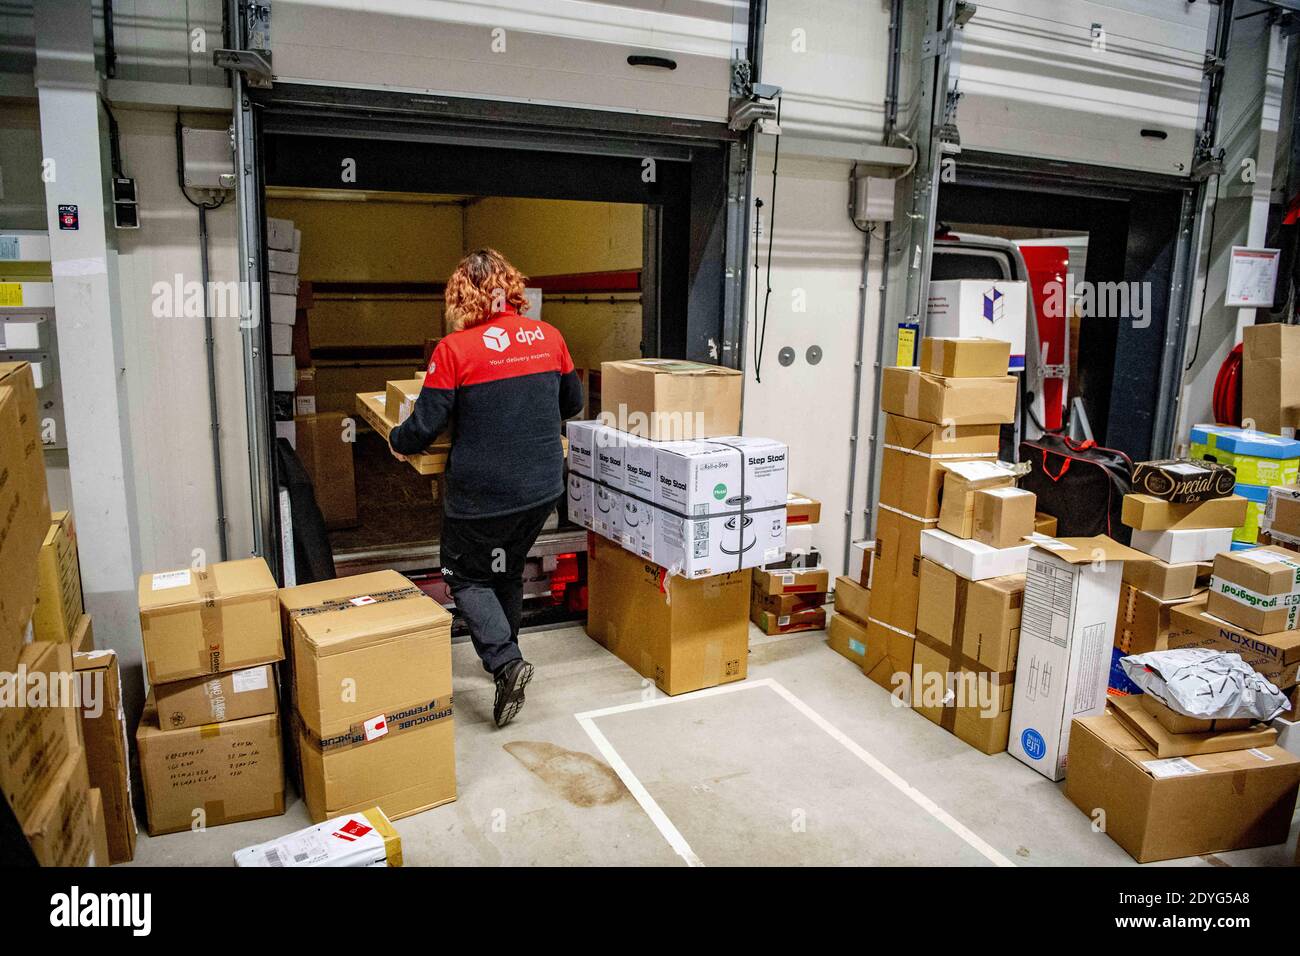 Zustellfirma DPD Paketsortierzentrum in Oirschot, Niederlande, am 24.  Dezember 2020. Mitarbeiter von DPD sortieren Pakete in der  Paketsortierzentrale. Dies ist eine der geschäftigsten Zeiten des Jahres im  Vorfeld von Weihnachten. Aufgrund der